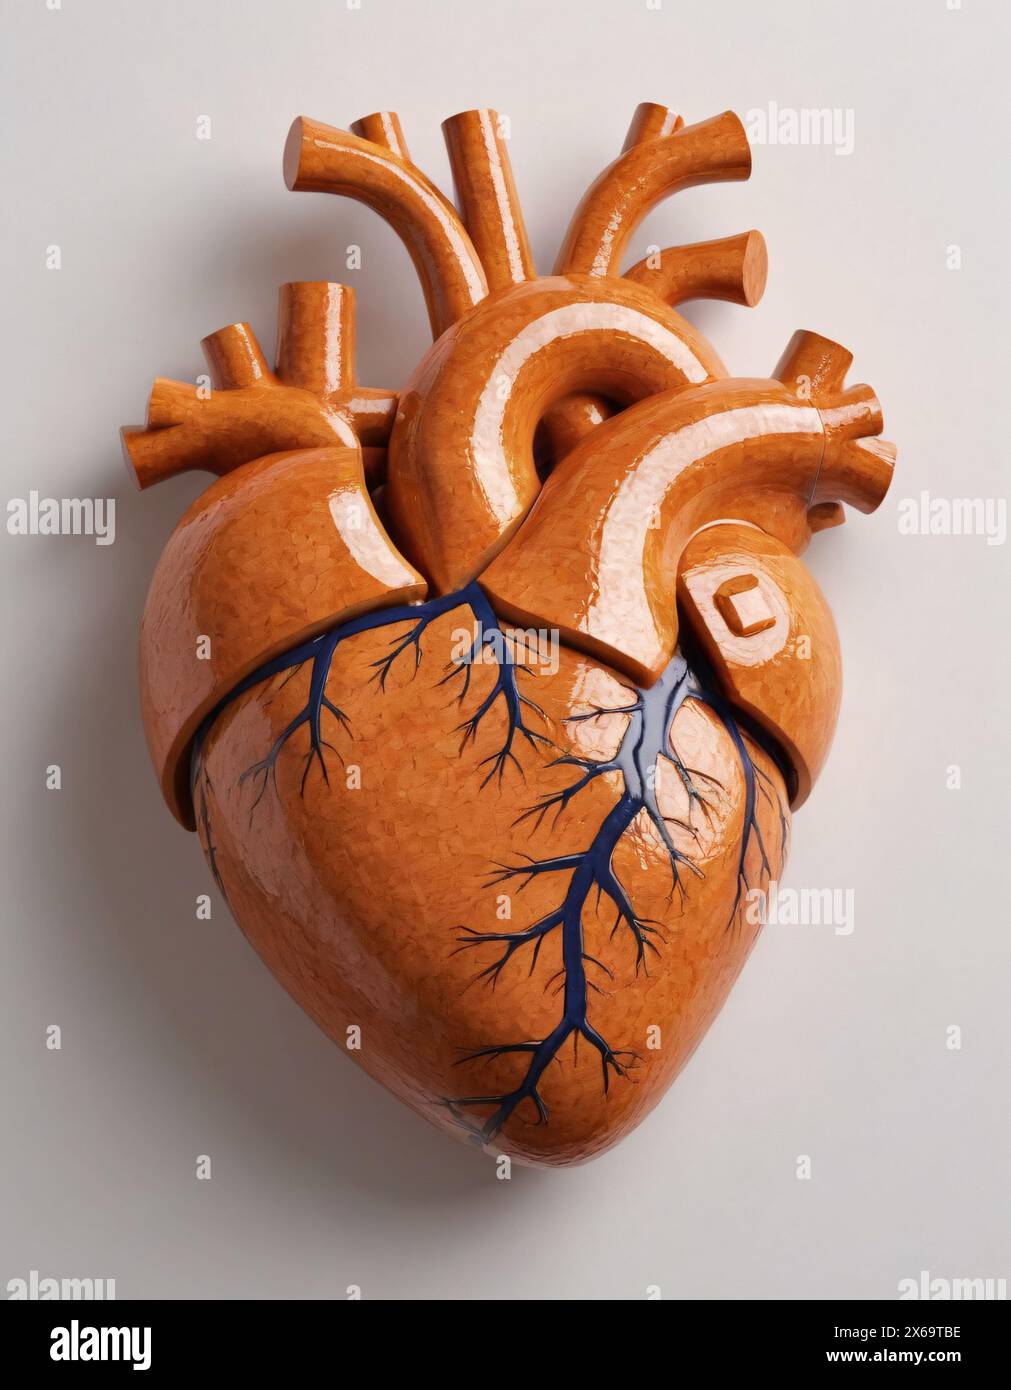 Menschliches Herz, semirealistische Darstellung. Dunkle Töpferwaren Stockfoto